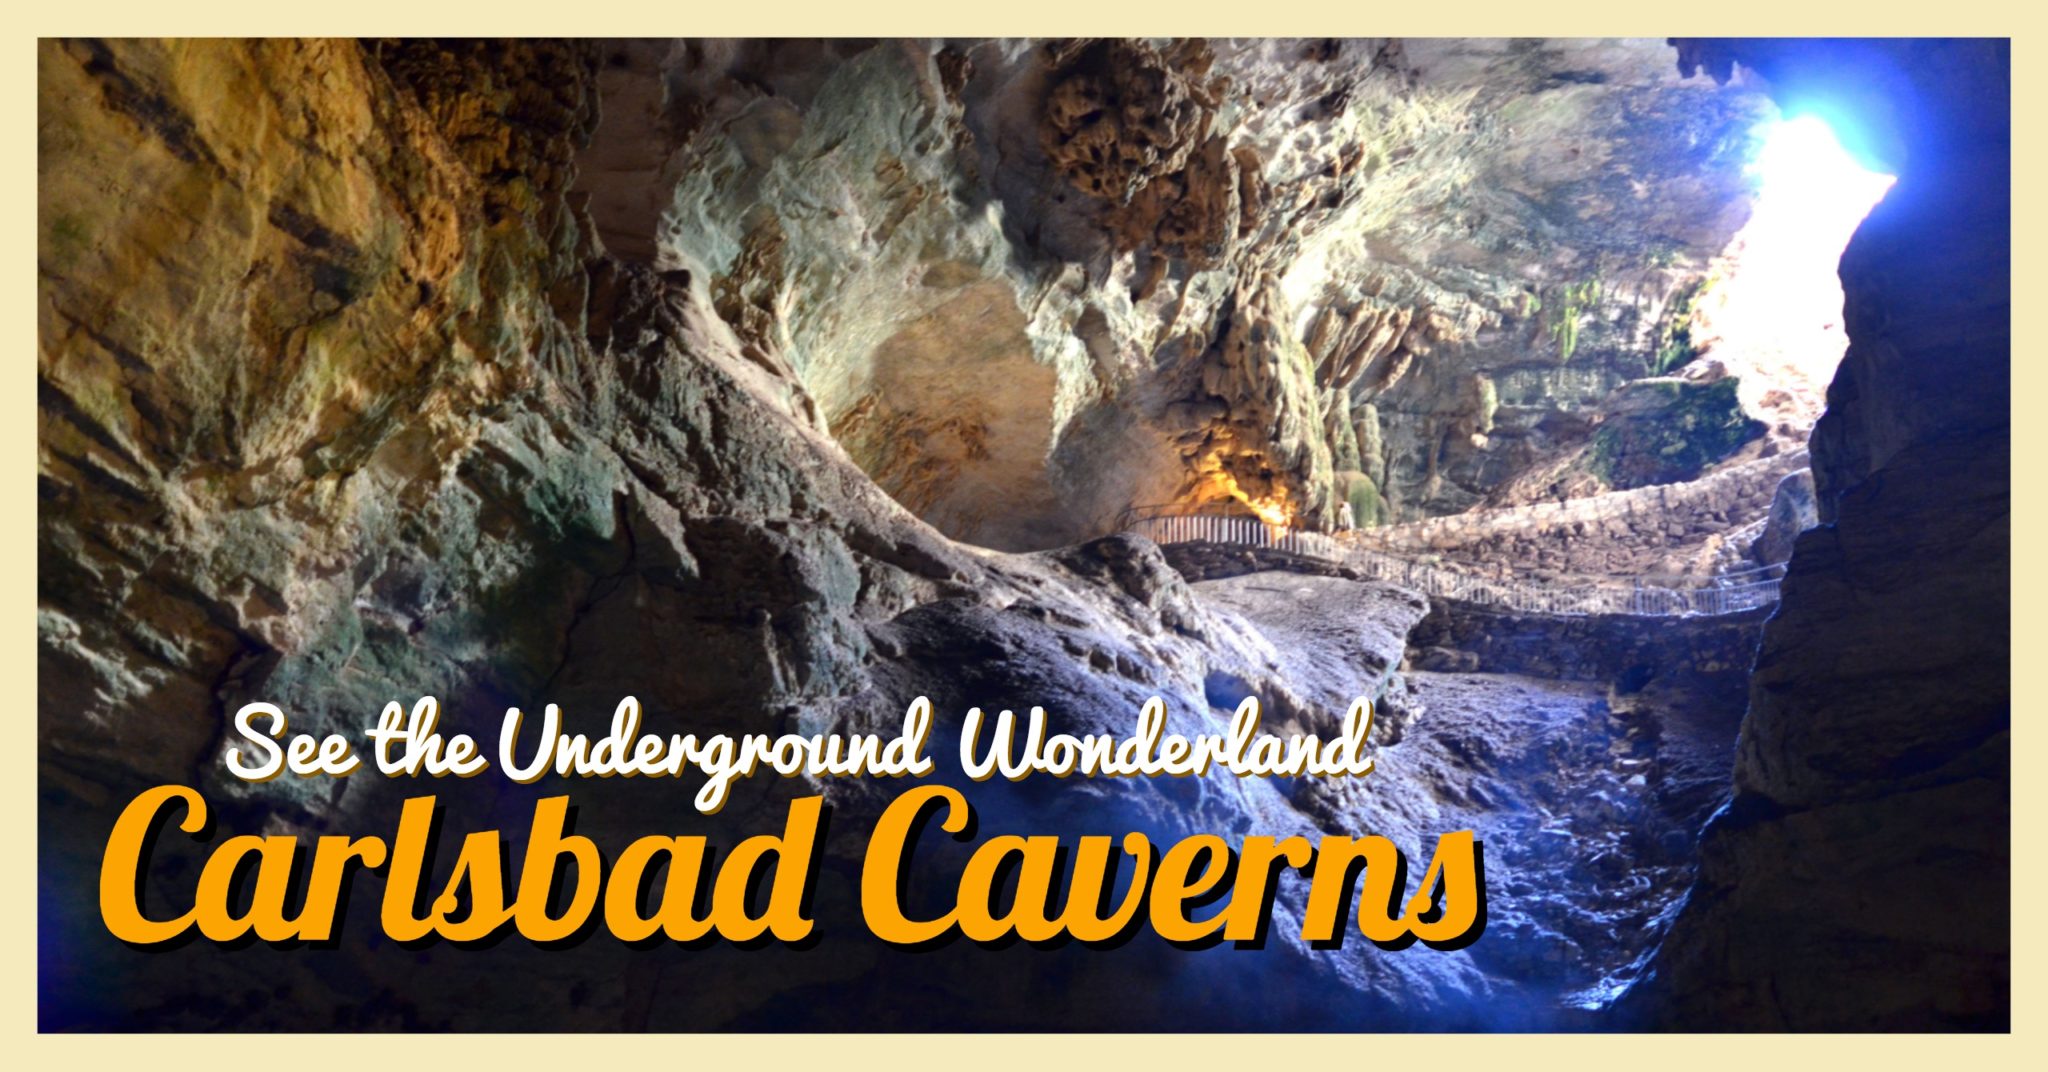 Episode 30 — Carlsbad Caverns: Wonderland Under the Ground